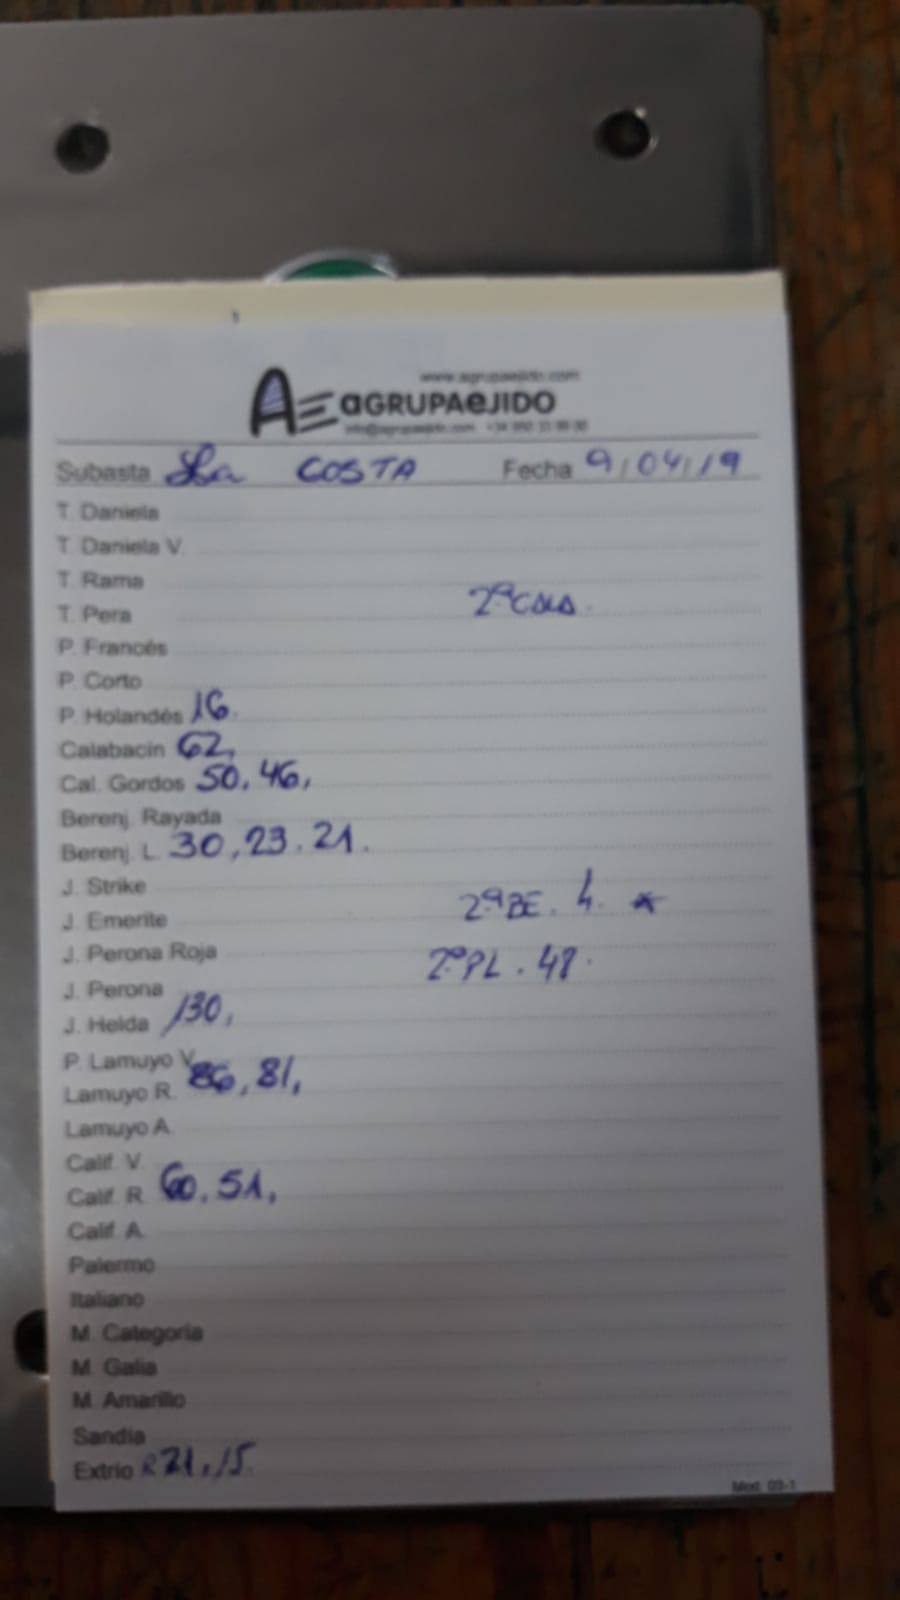 Subasta hortofrutícola AgrupaEjido La Costa 9 de Abril 2019